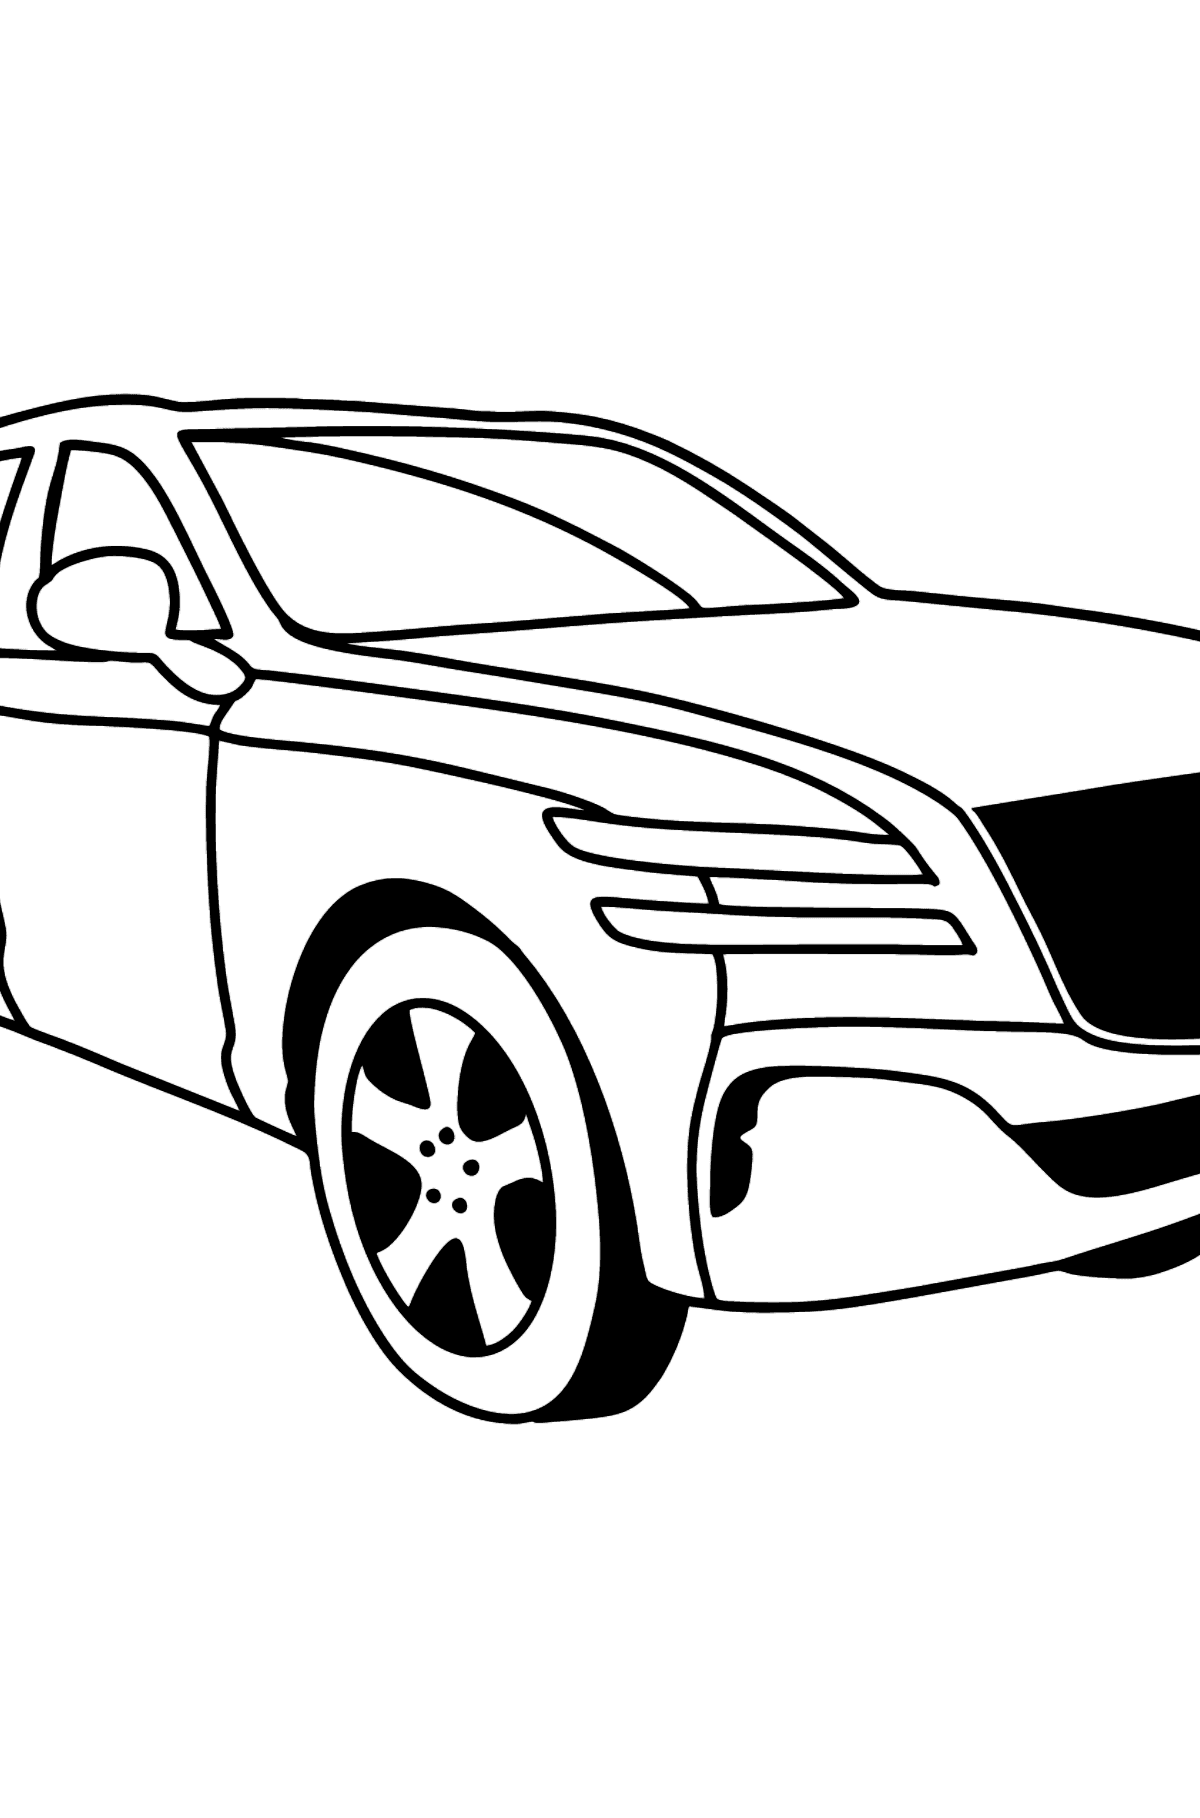 Tegning til fargelegging Genesis bil - Tegninger til fargelegging for barn